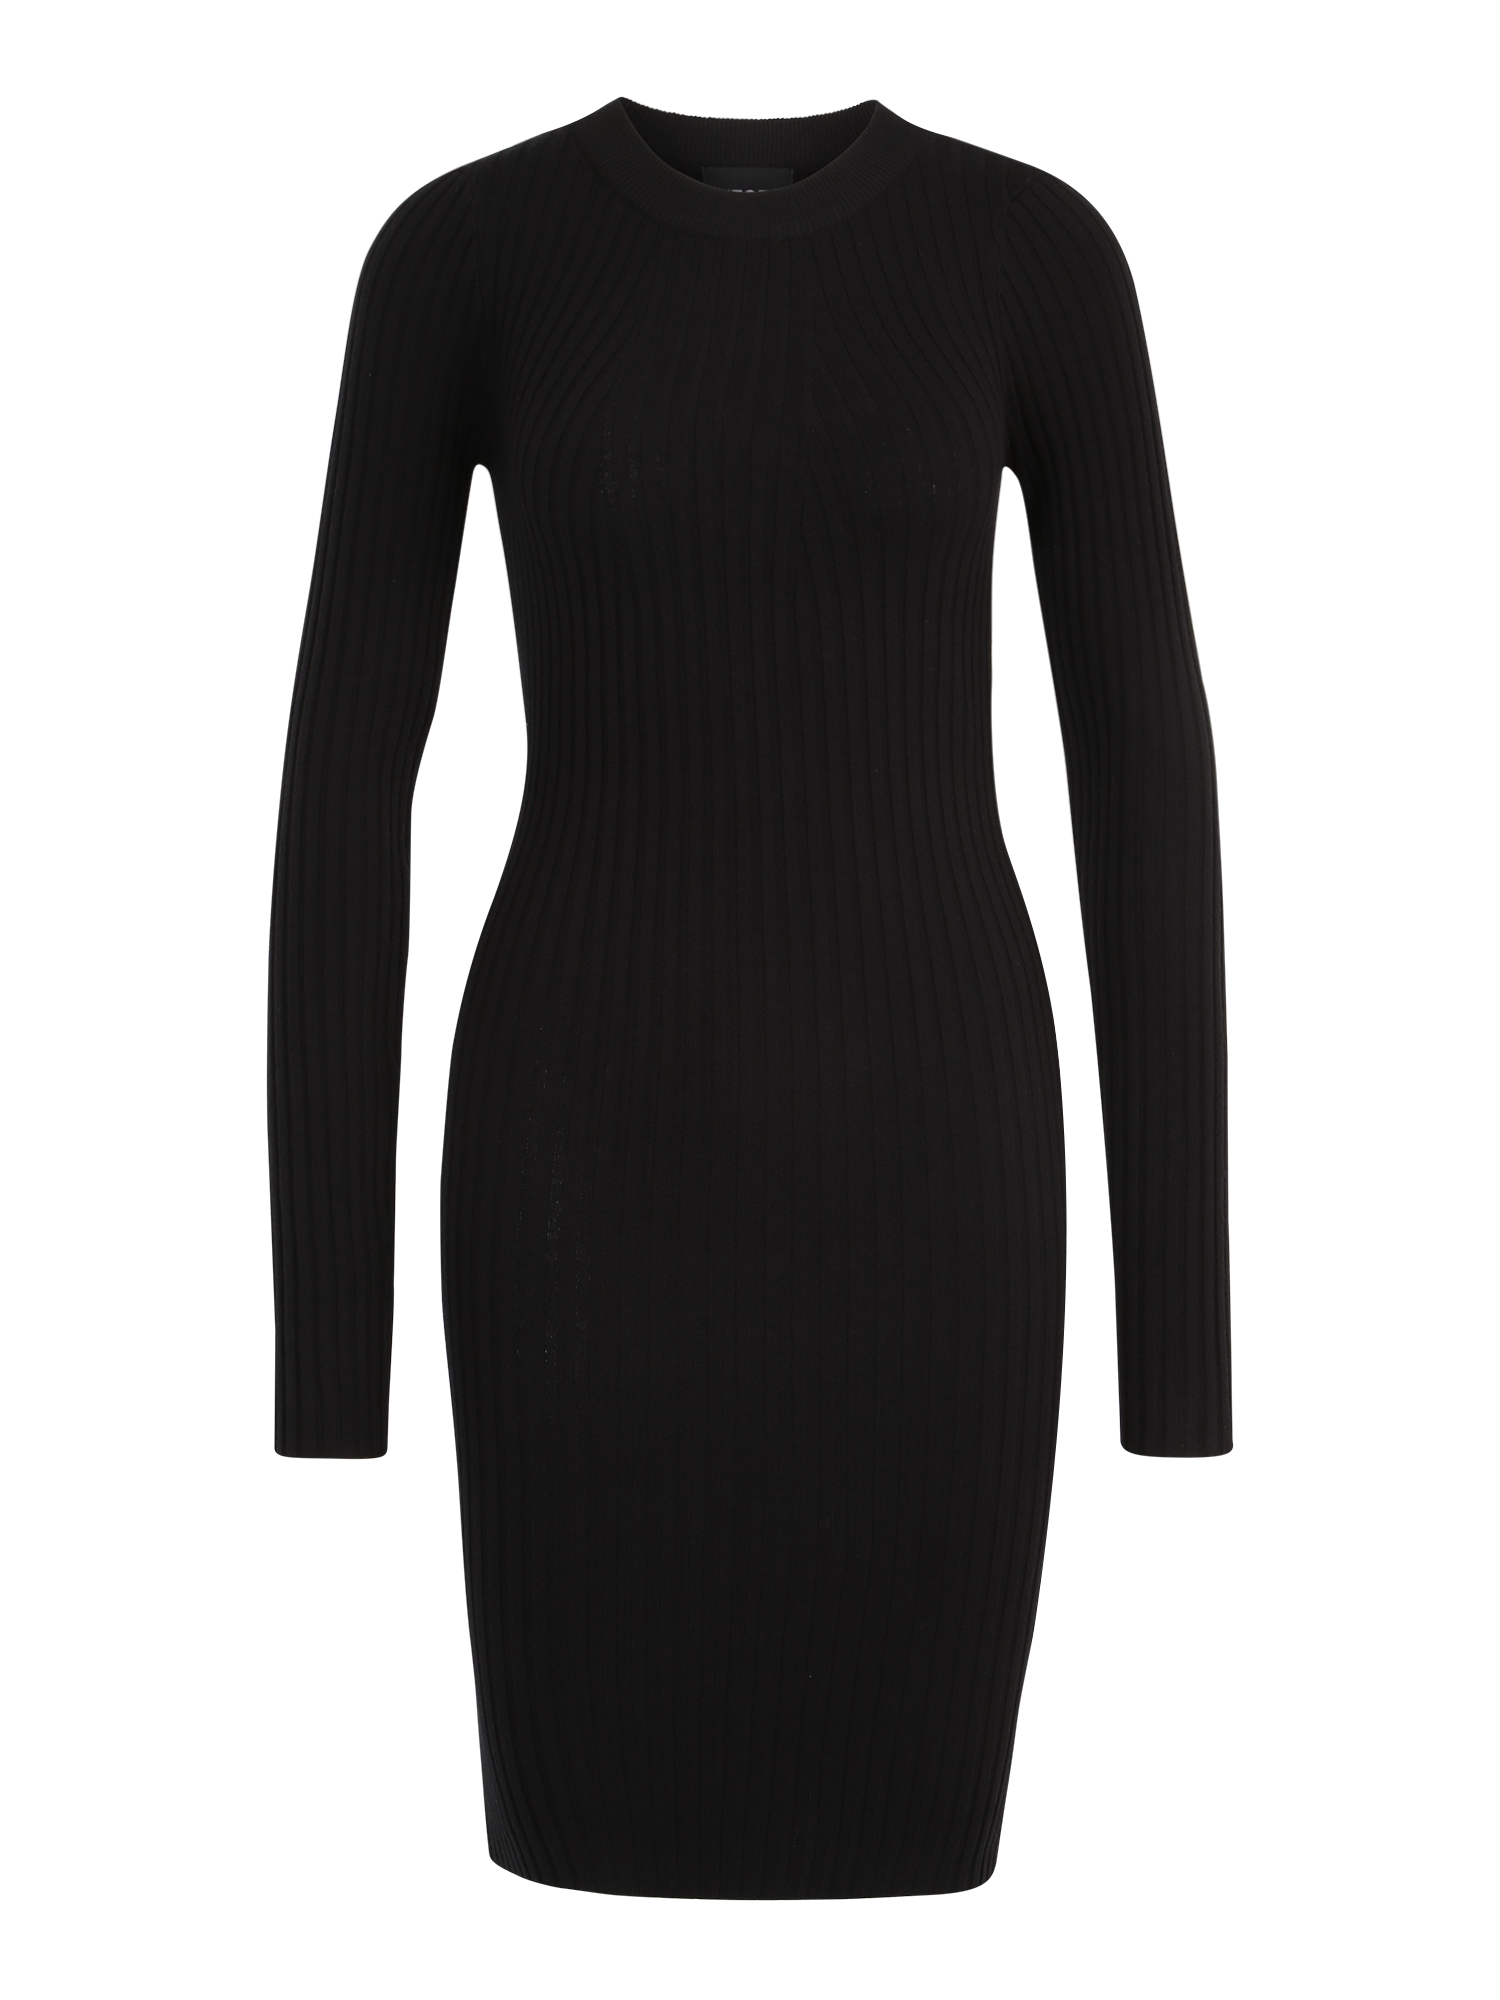 Odzież Uh89q Pieces Tall Sukienka z dzianiny CRISTA w kolorze Czarnym 